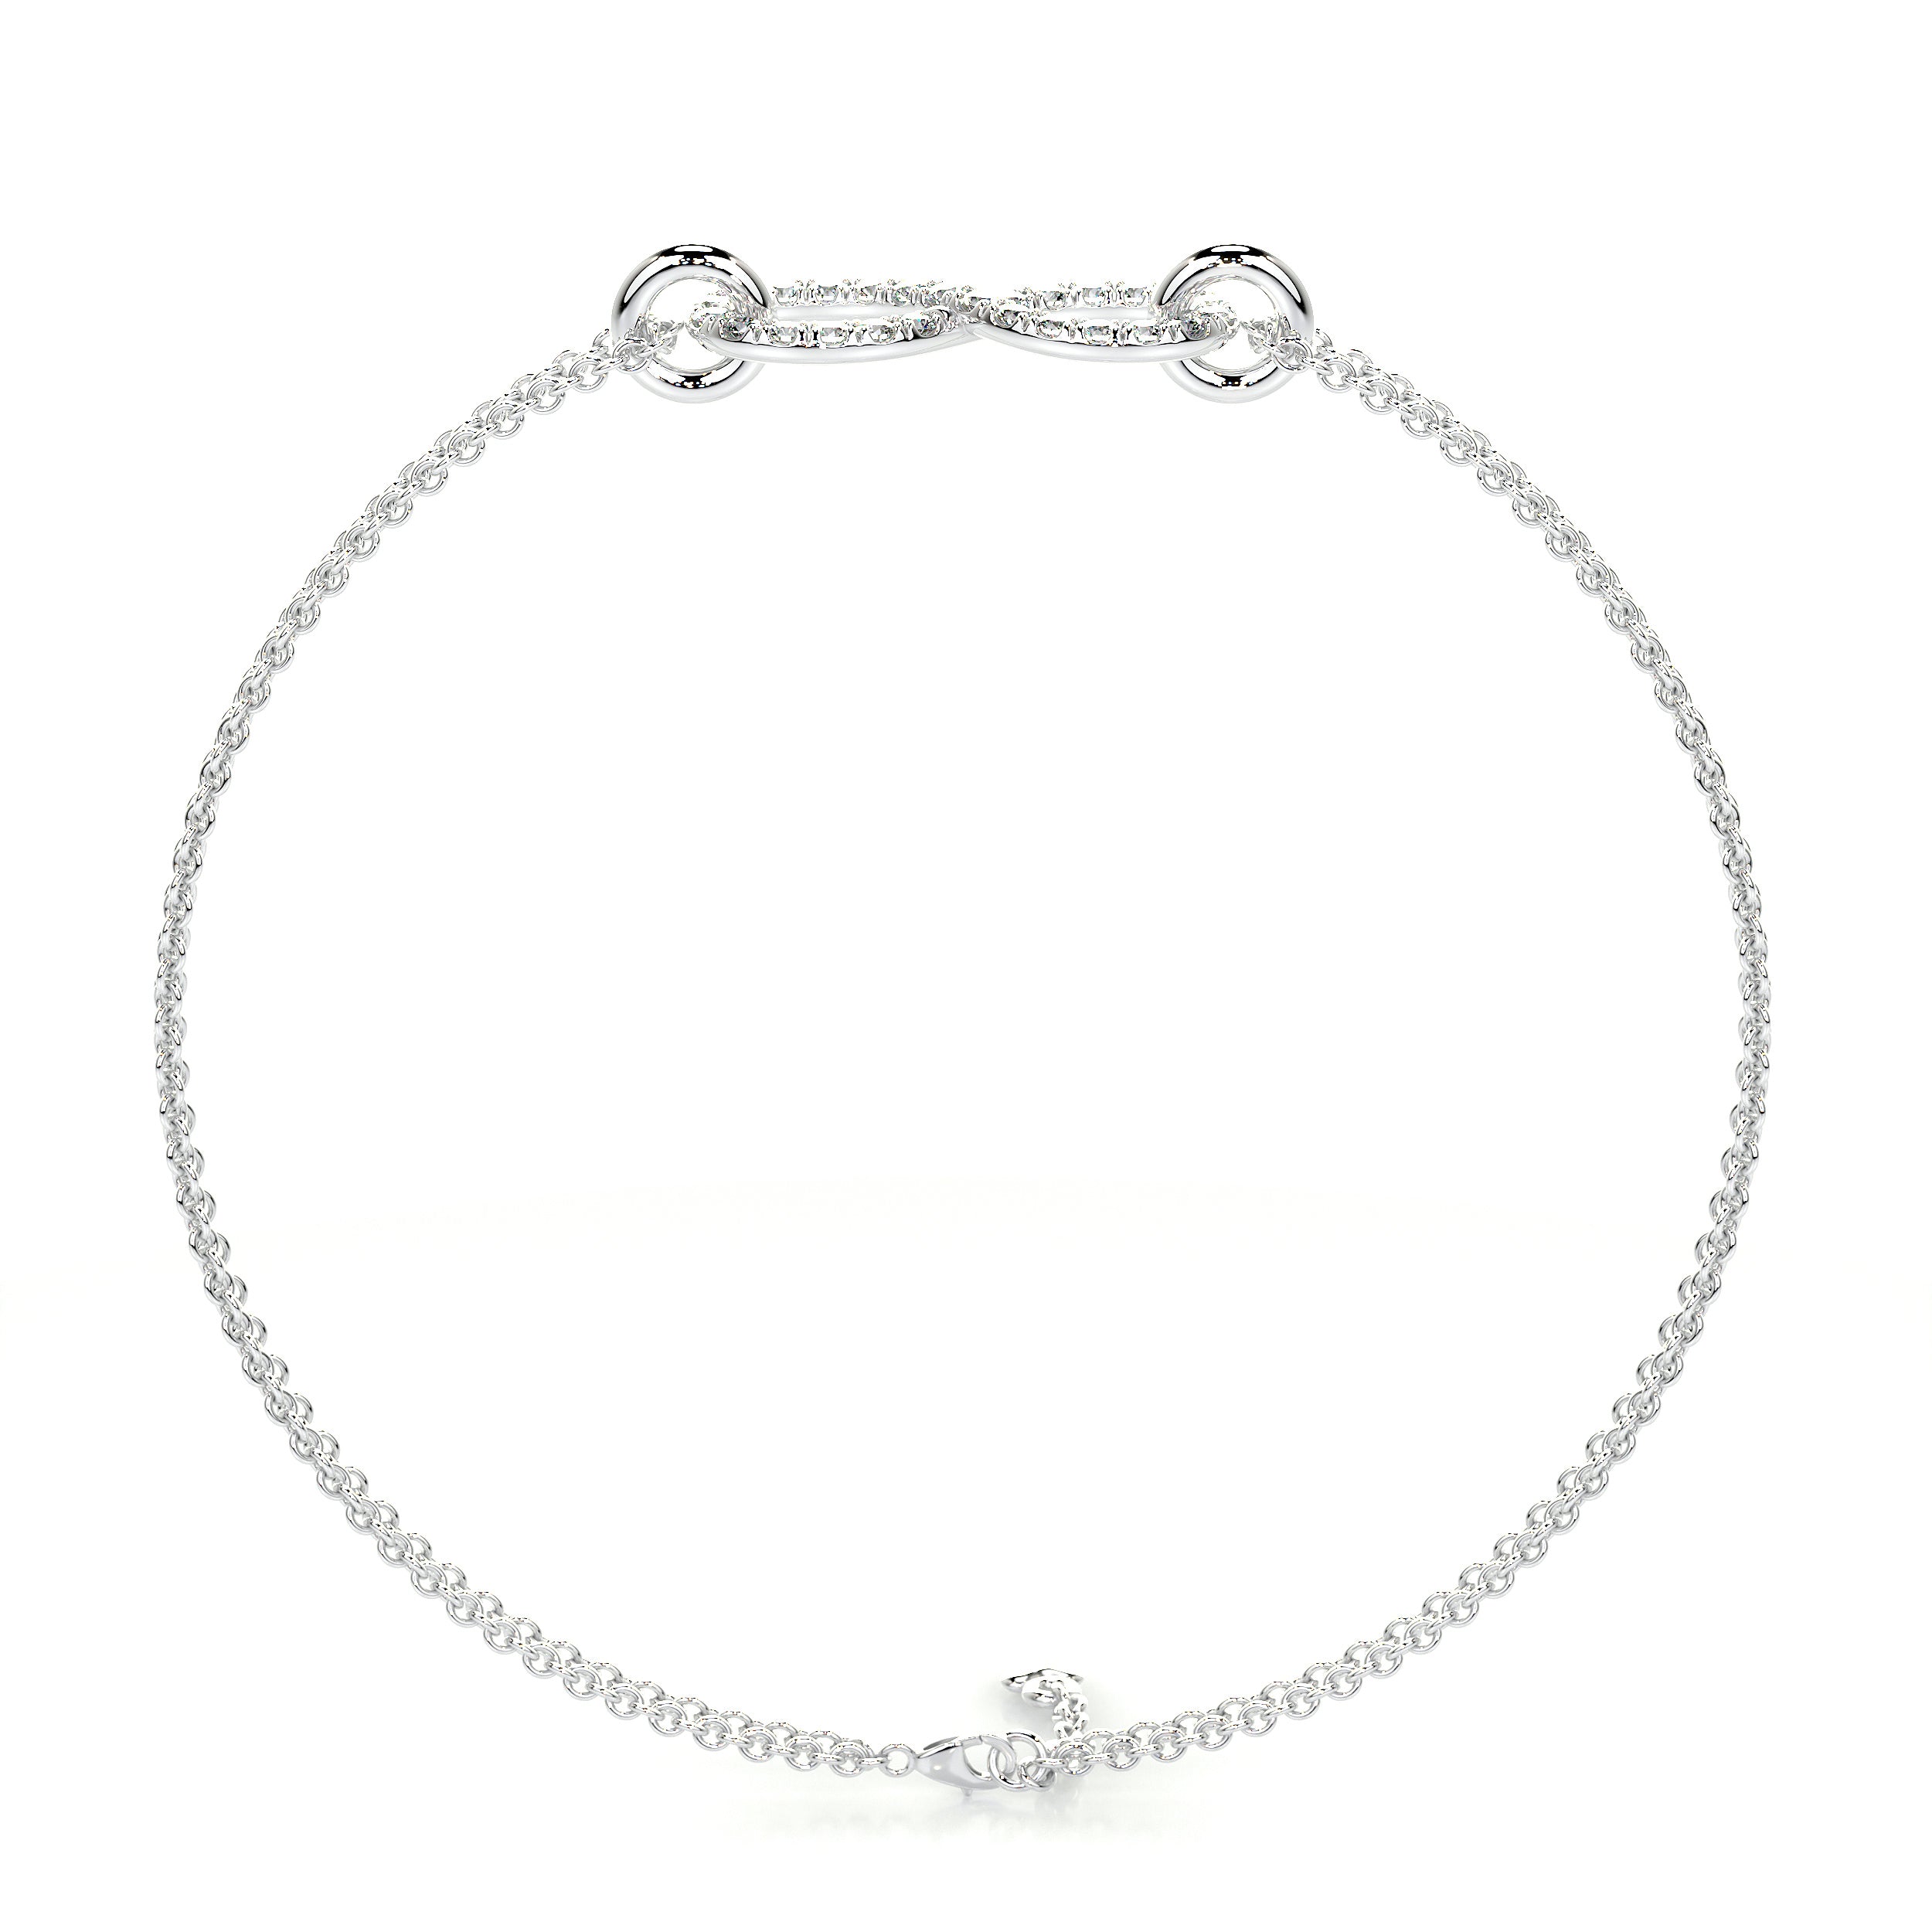 Debbie Diamonds Bracelet   (0.25 Carat) -18K White Gold